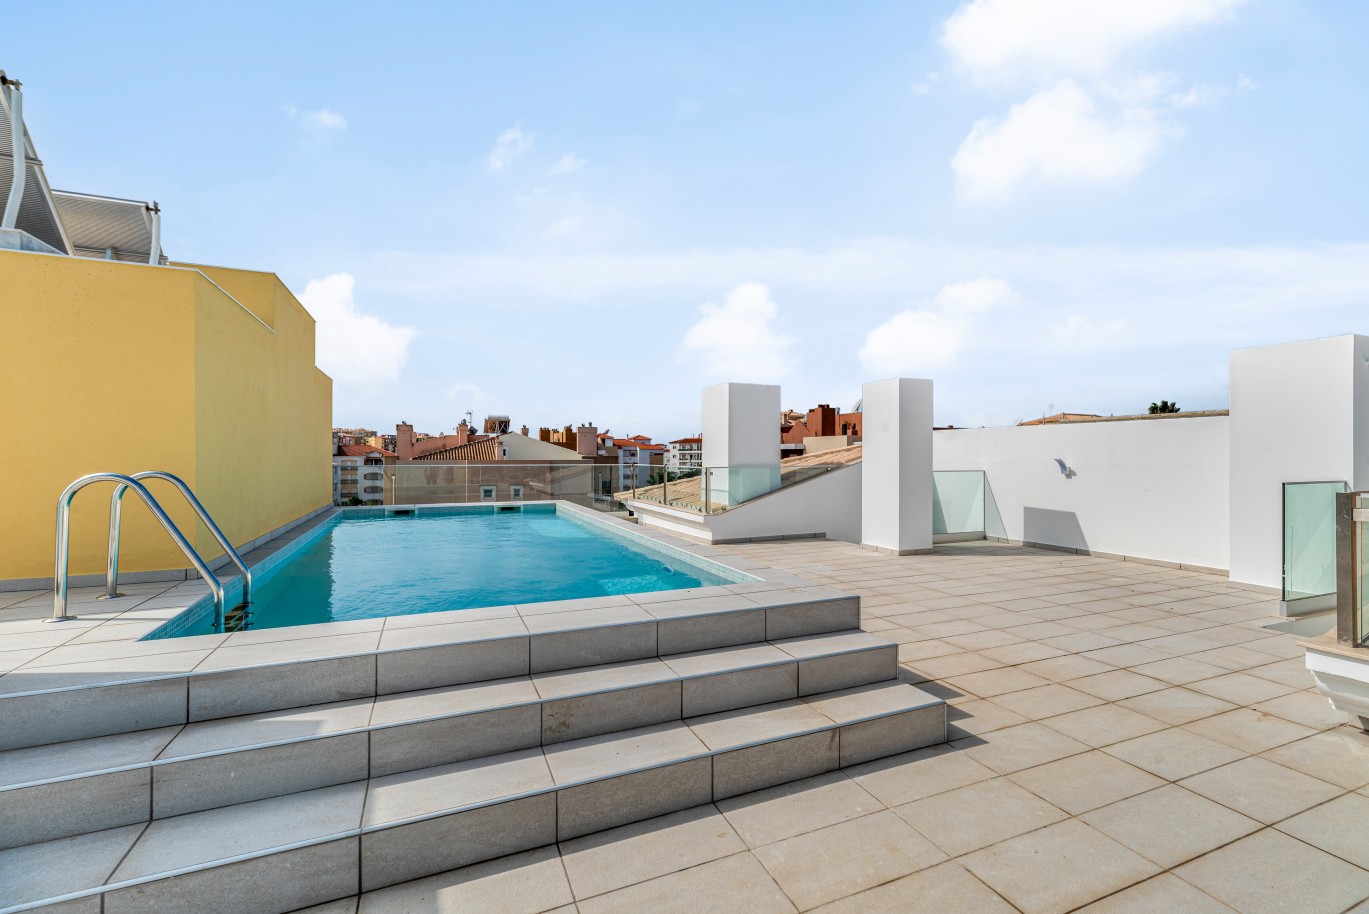 Apartamento, com terraço, para venda, em Lagos, Algarve_238155